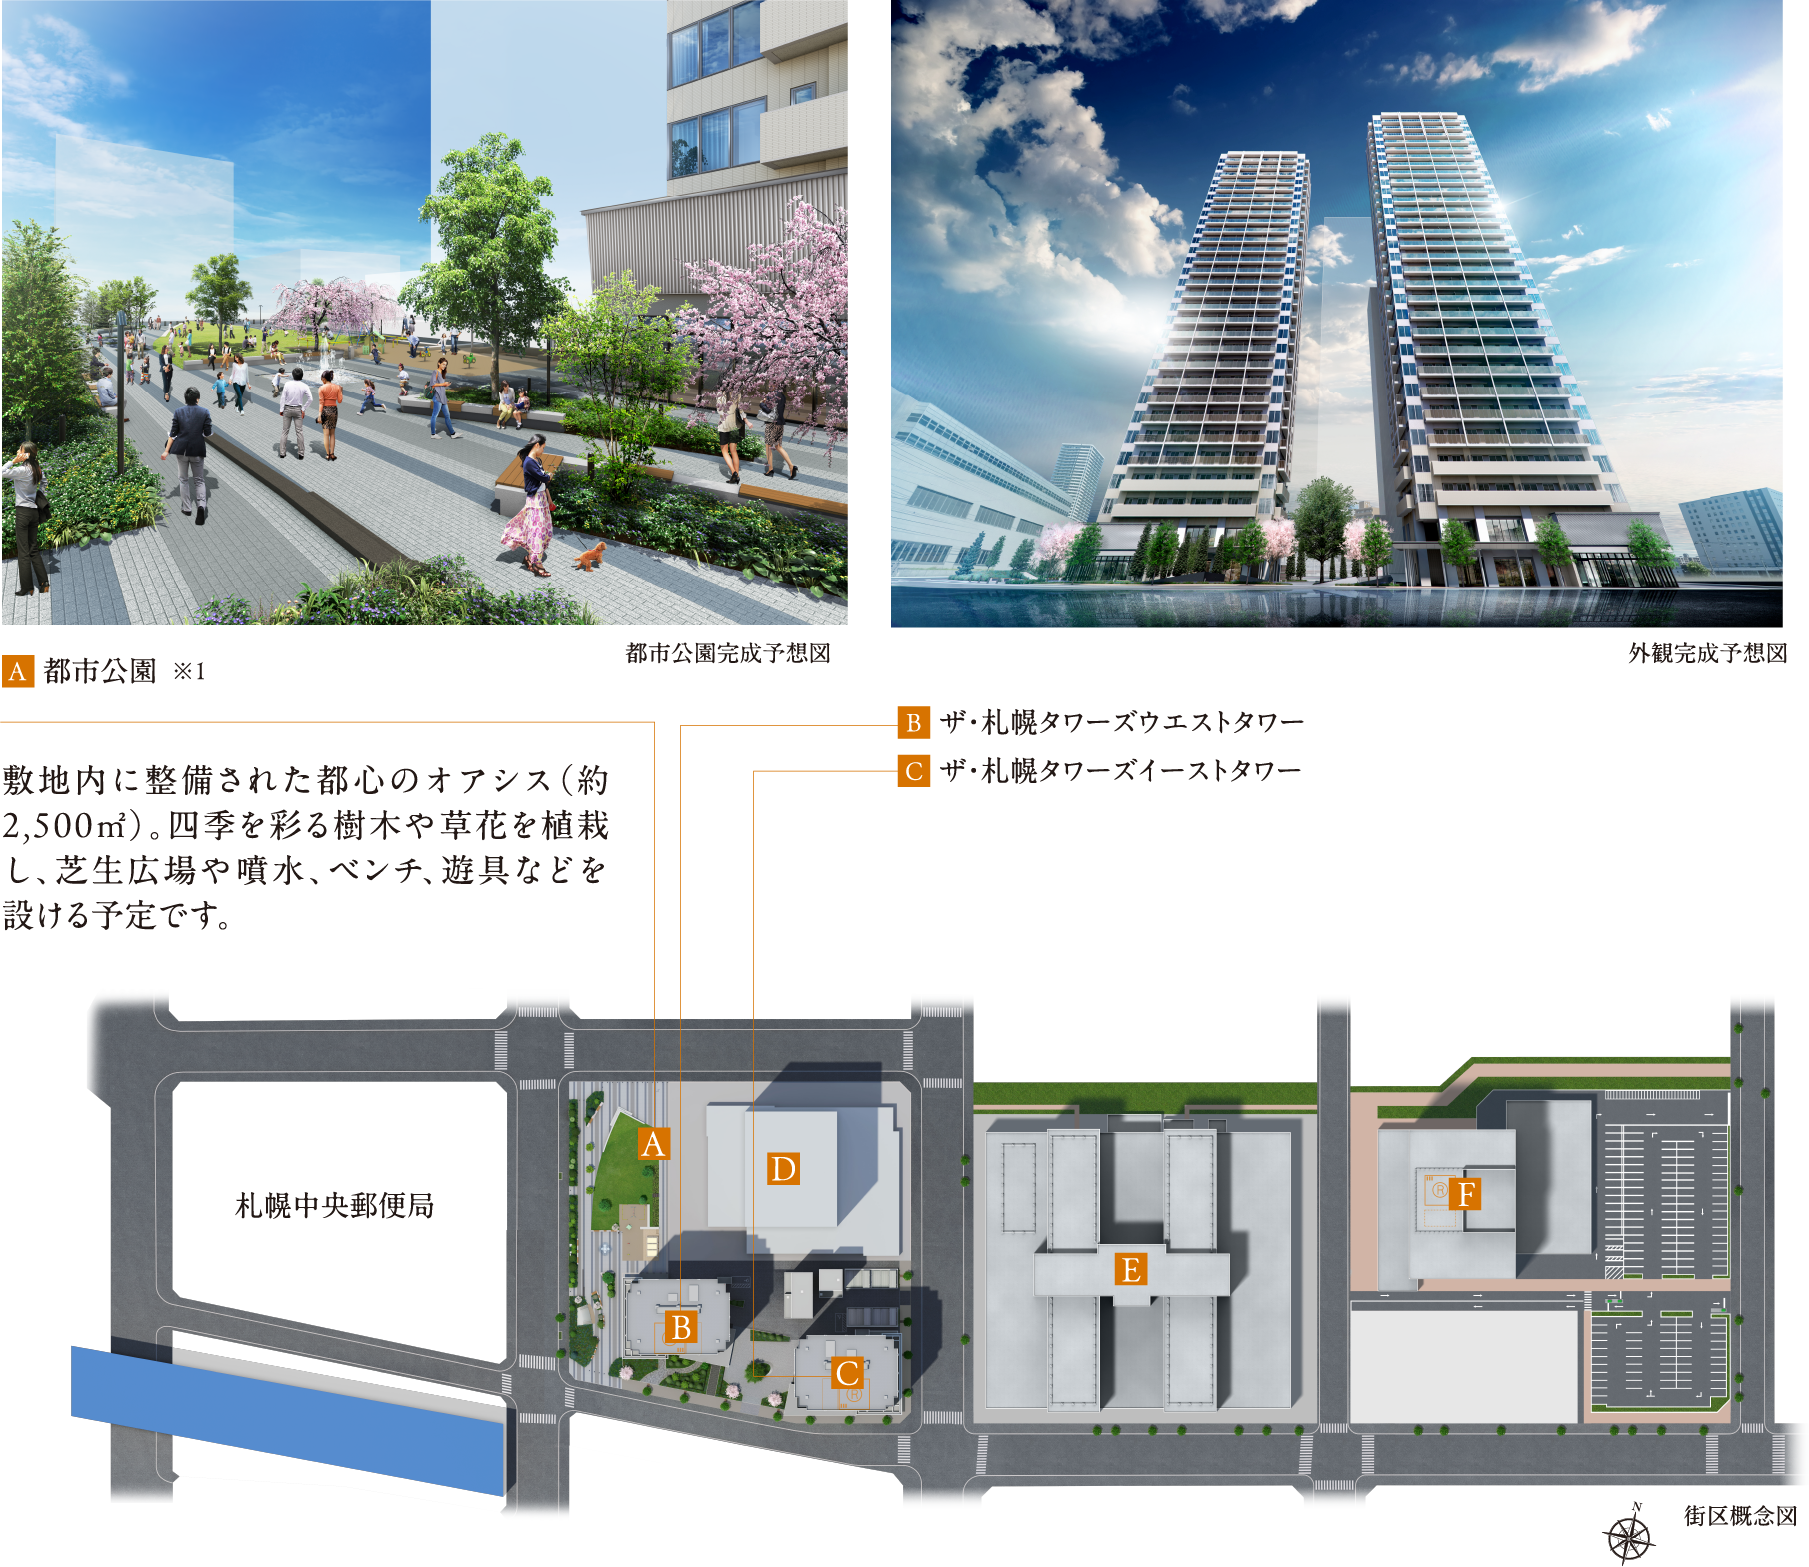 A:都市公園 B/C:ザ・札幌タワーズ 街区概念図